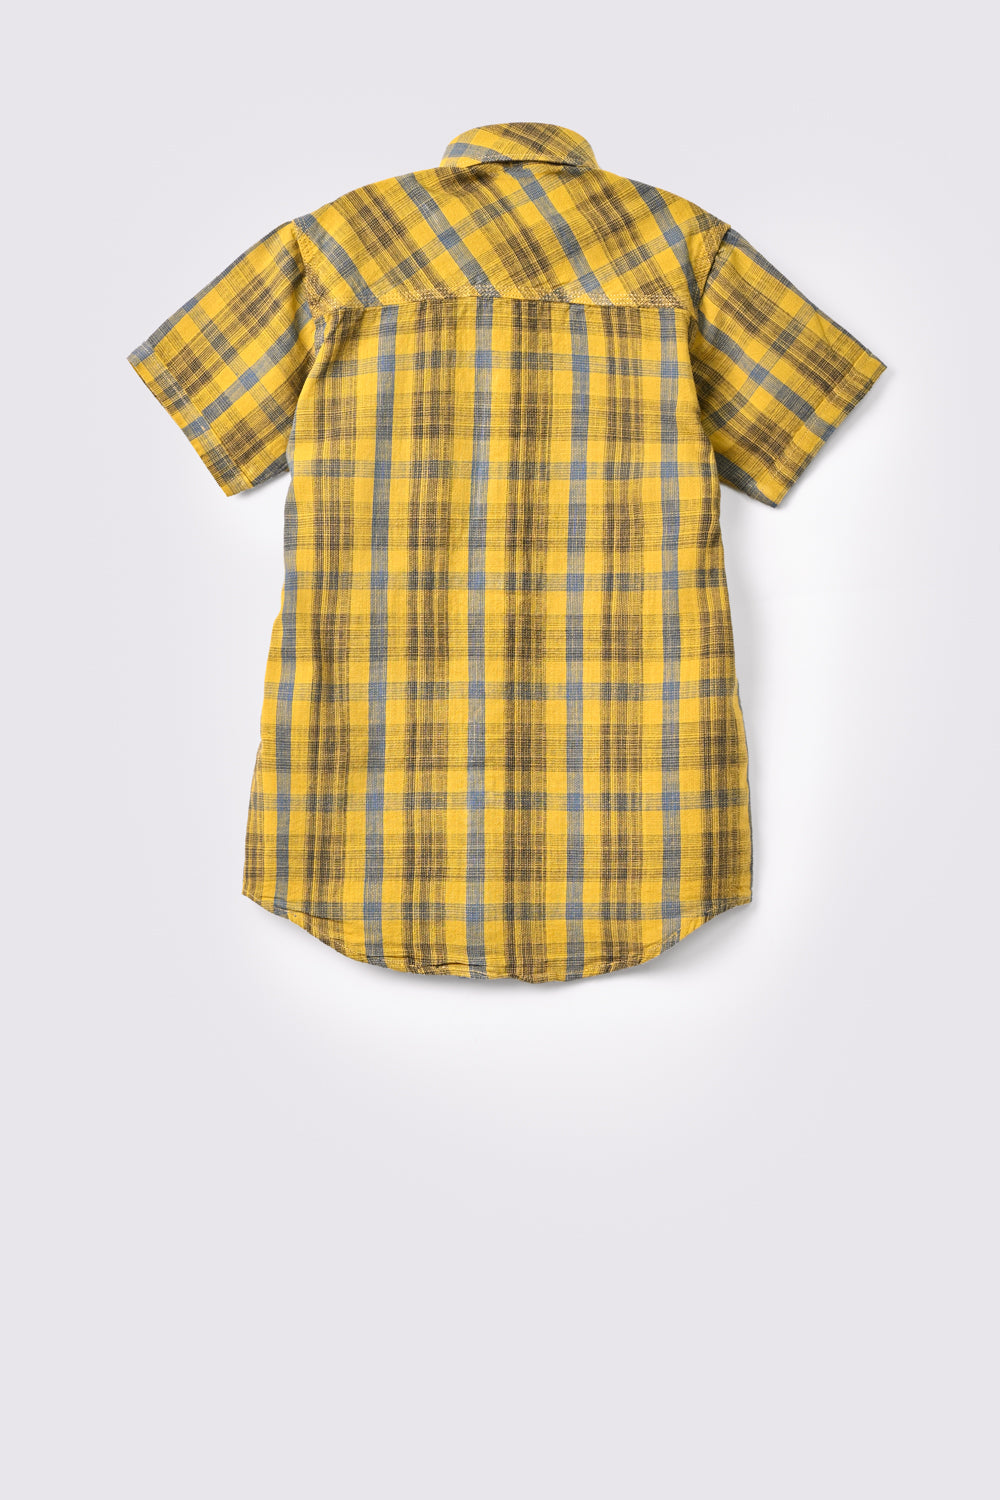 Boy's Casual Shirt